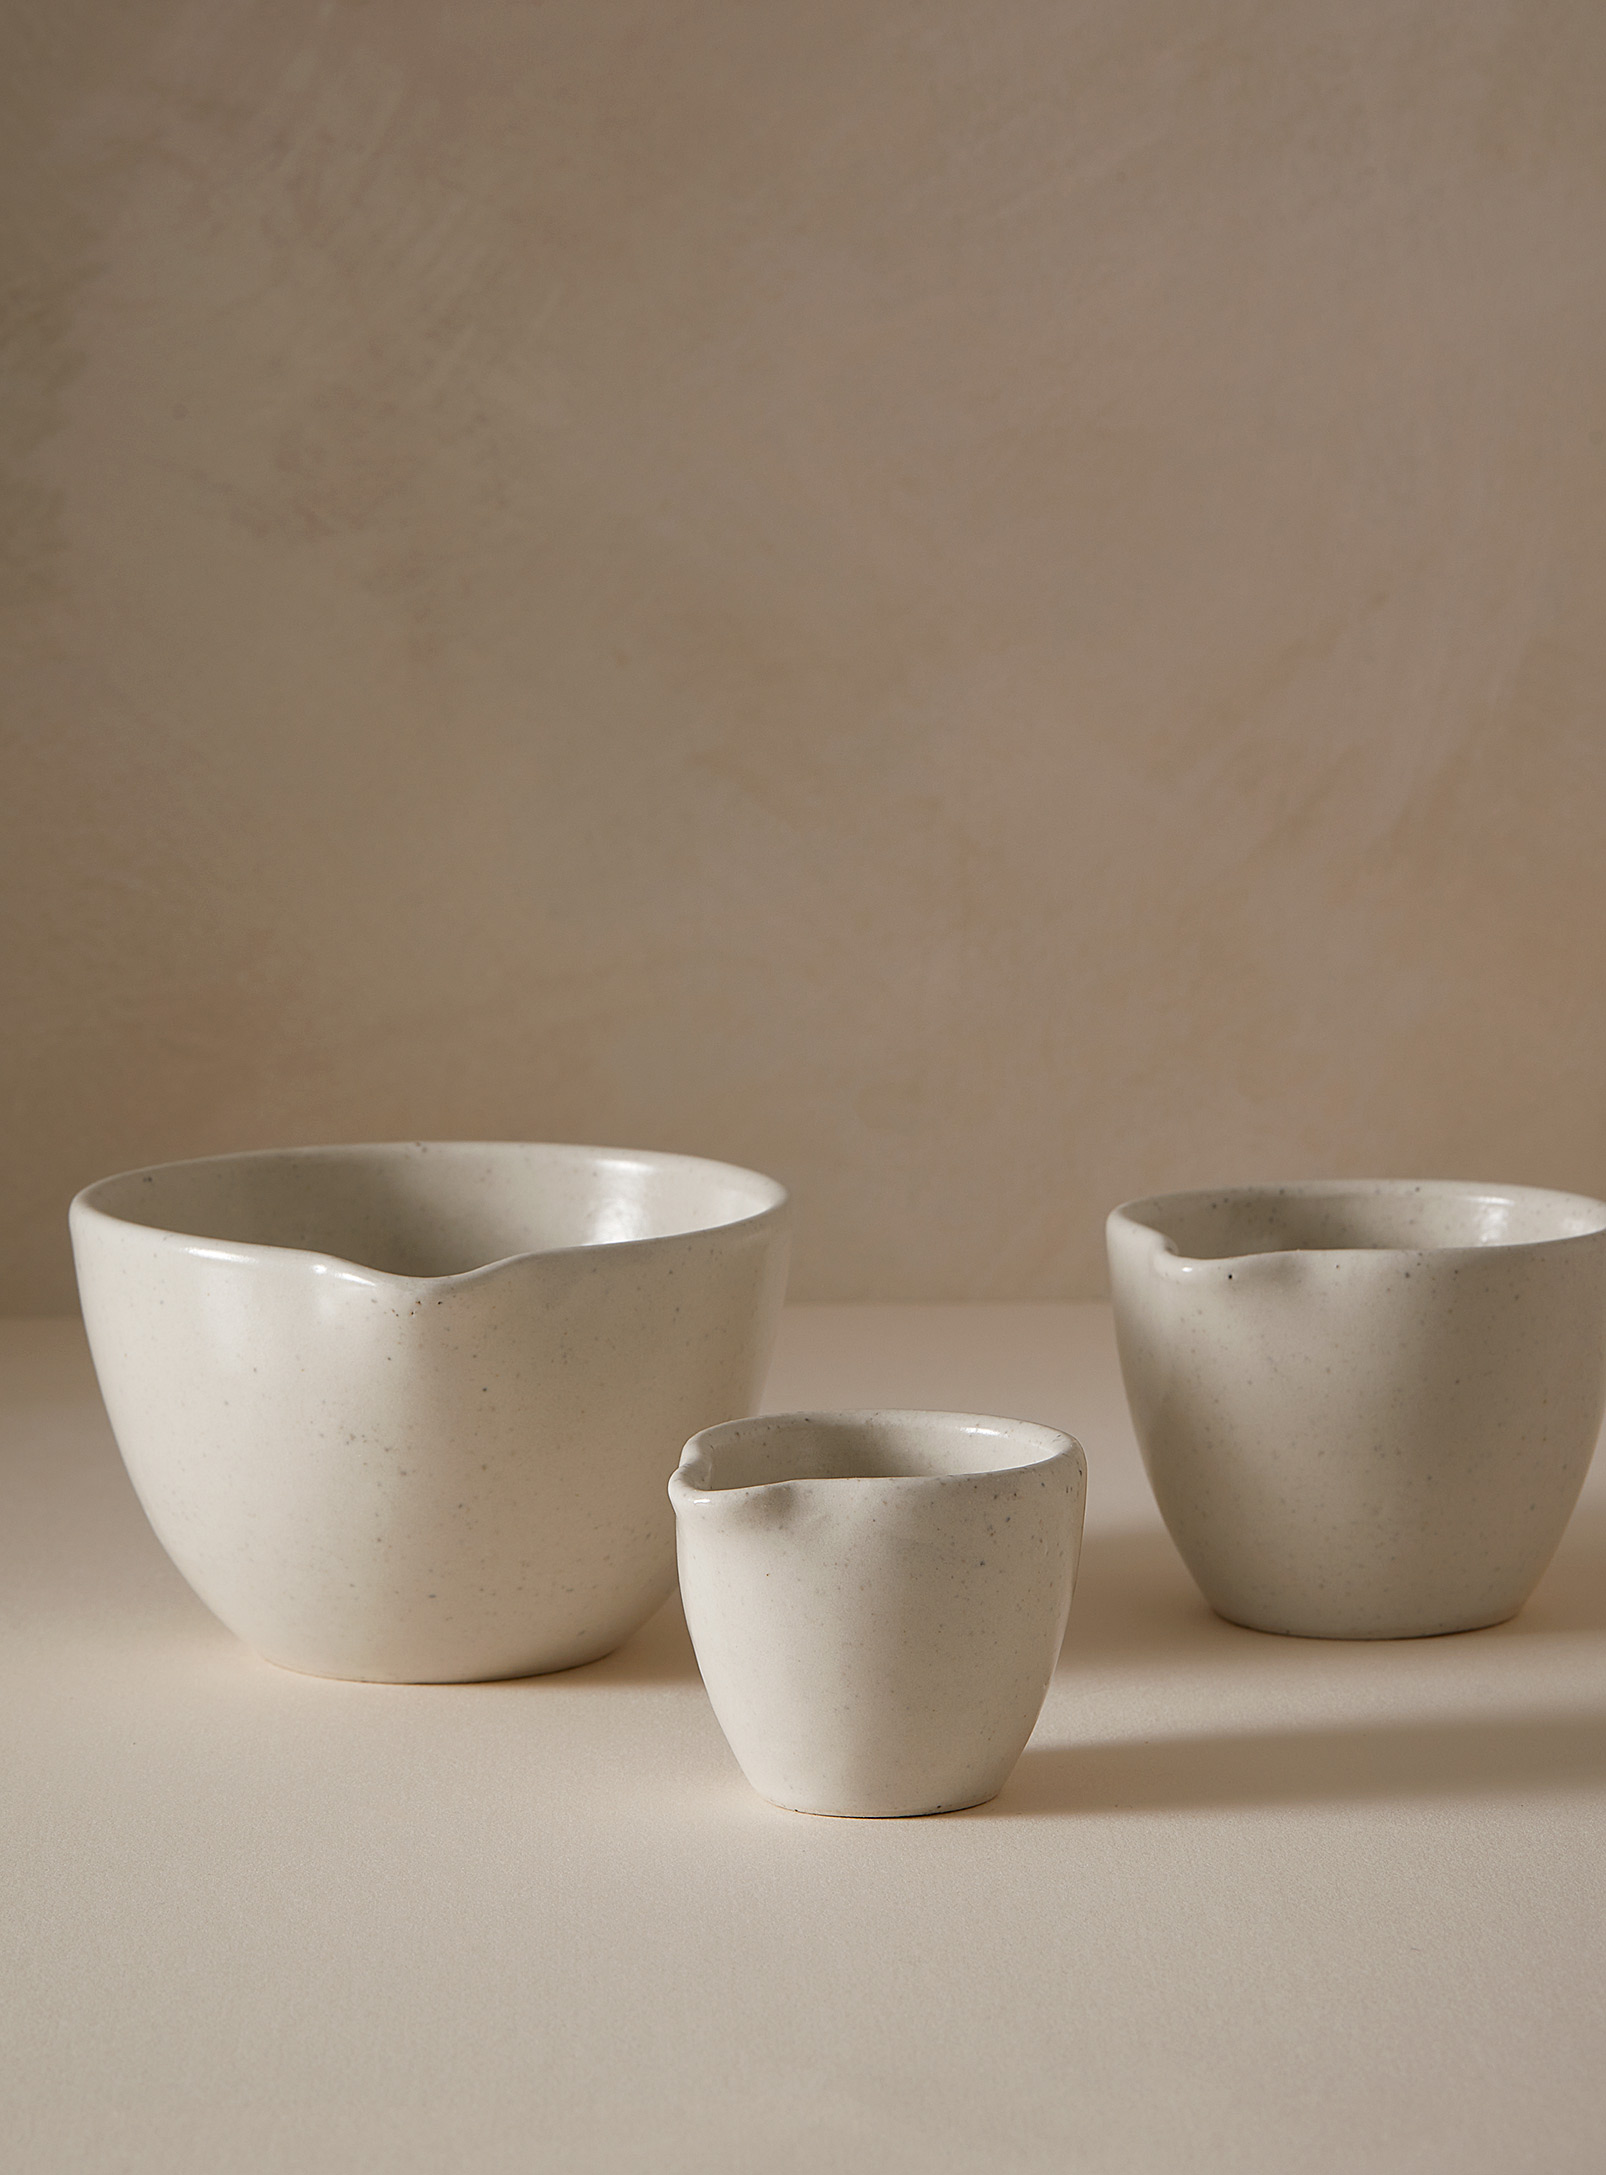 Atelier Tréma - Speckled stoneware pour spout bowls Set of 3